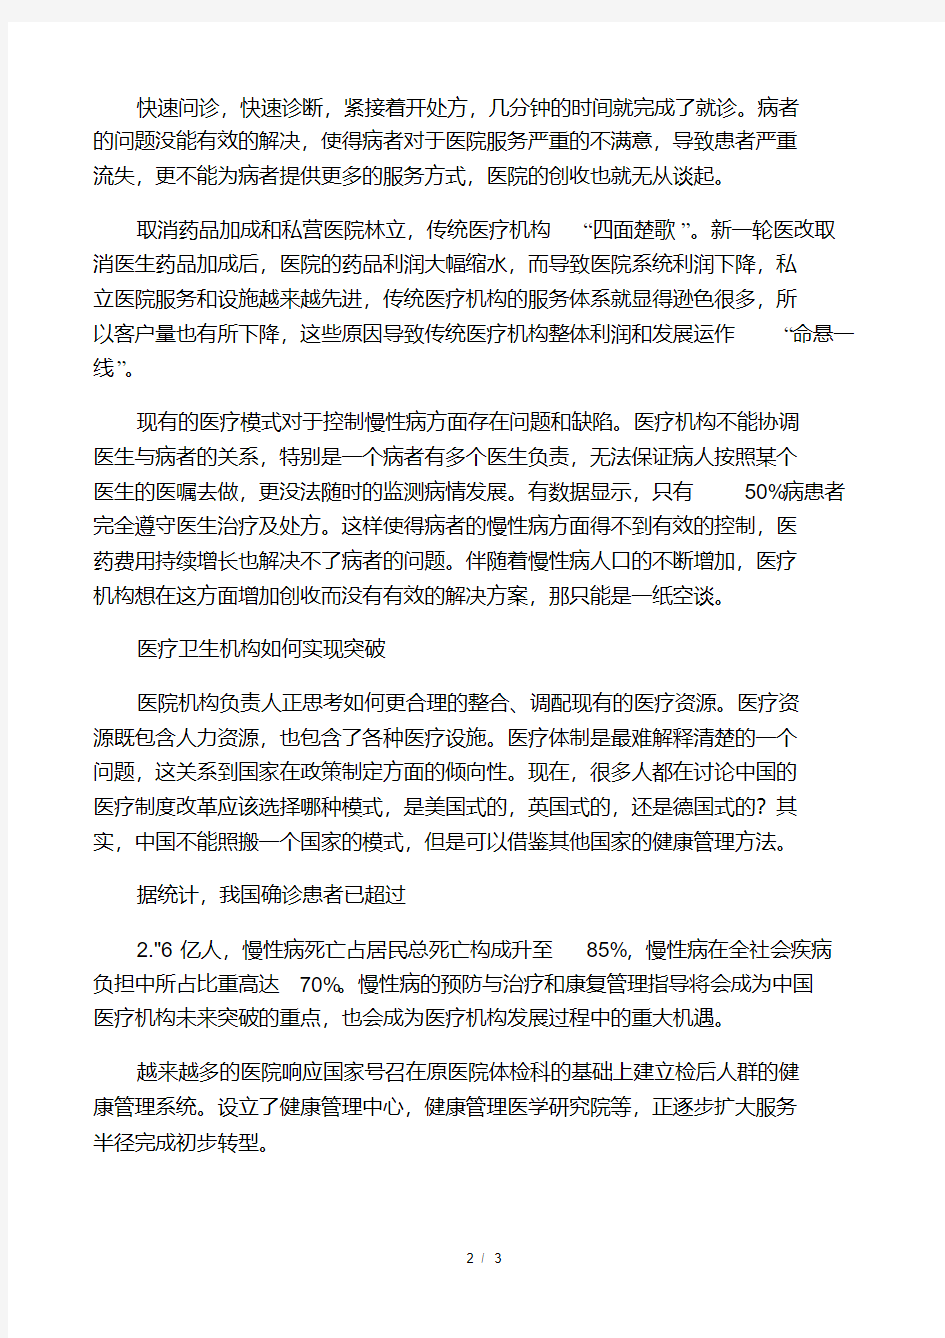 中国医疗卫生行业面临的挑战与机遇.pdf